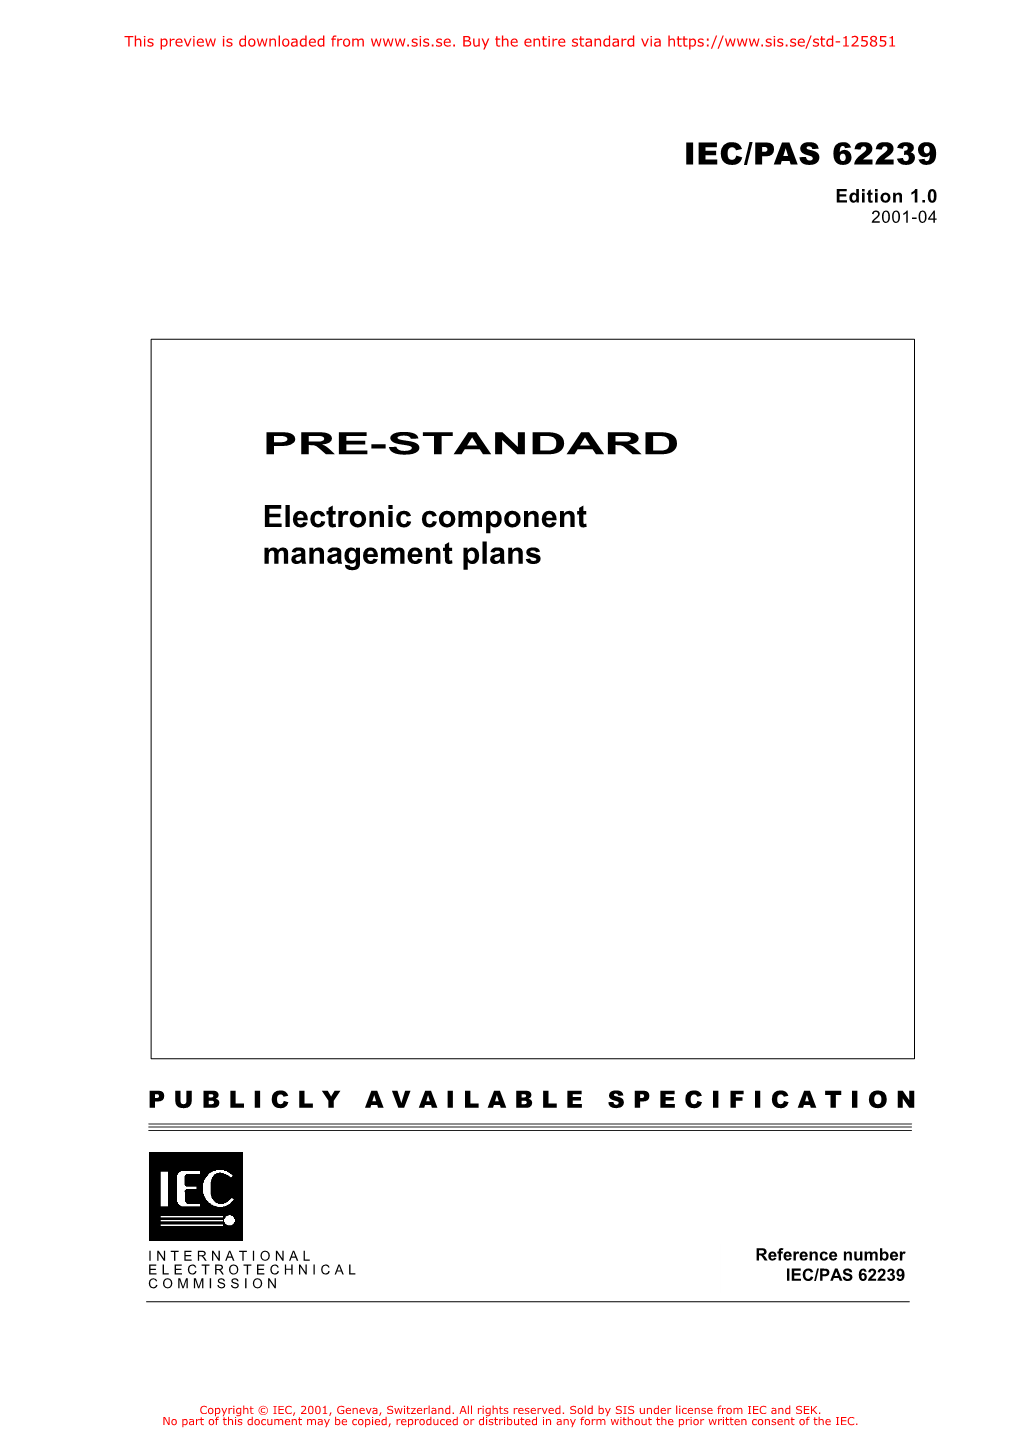 PRE-STANDARD Electronic Component Management Plans IEC